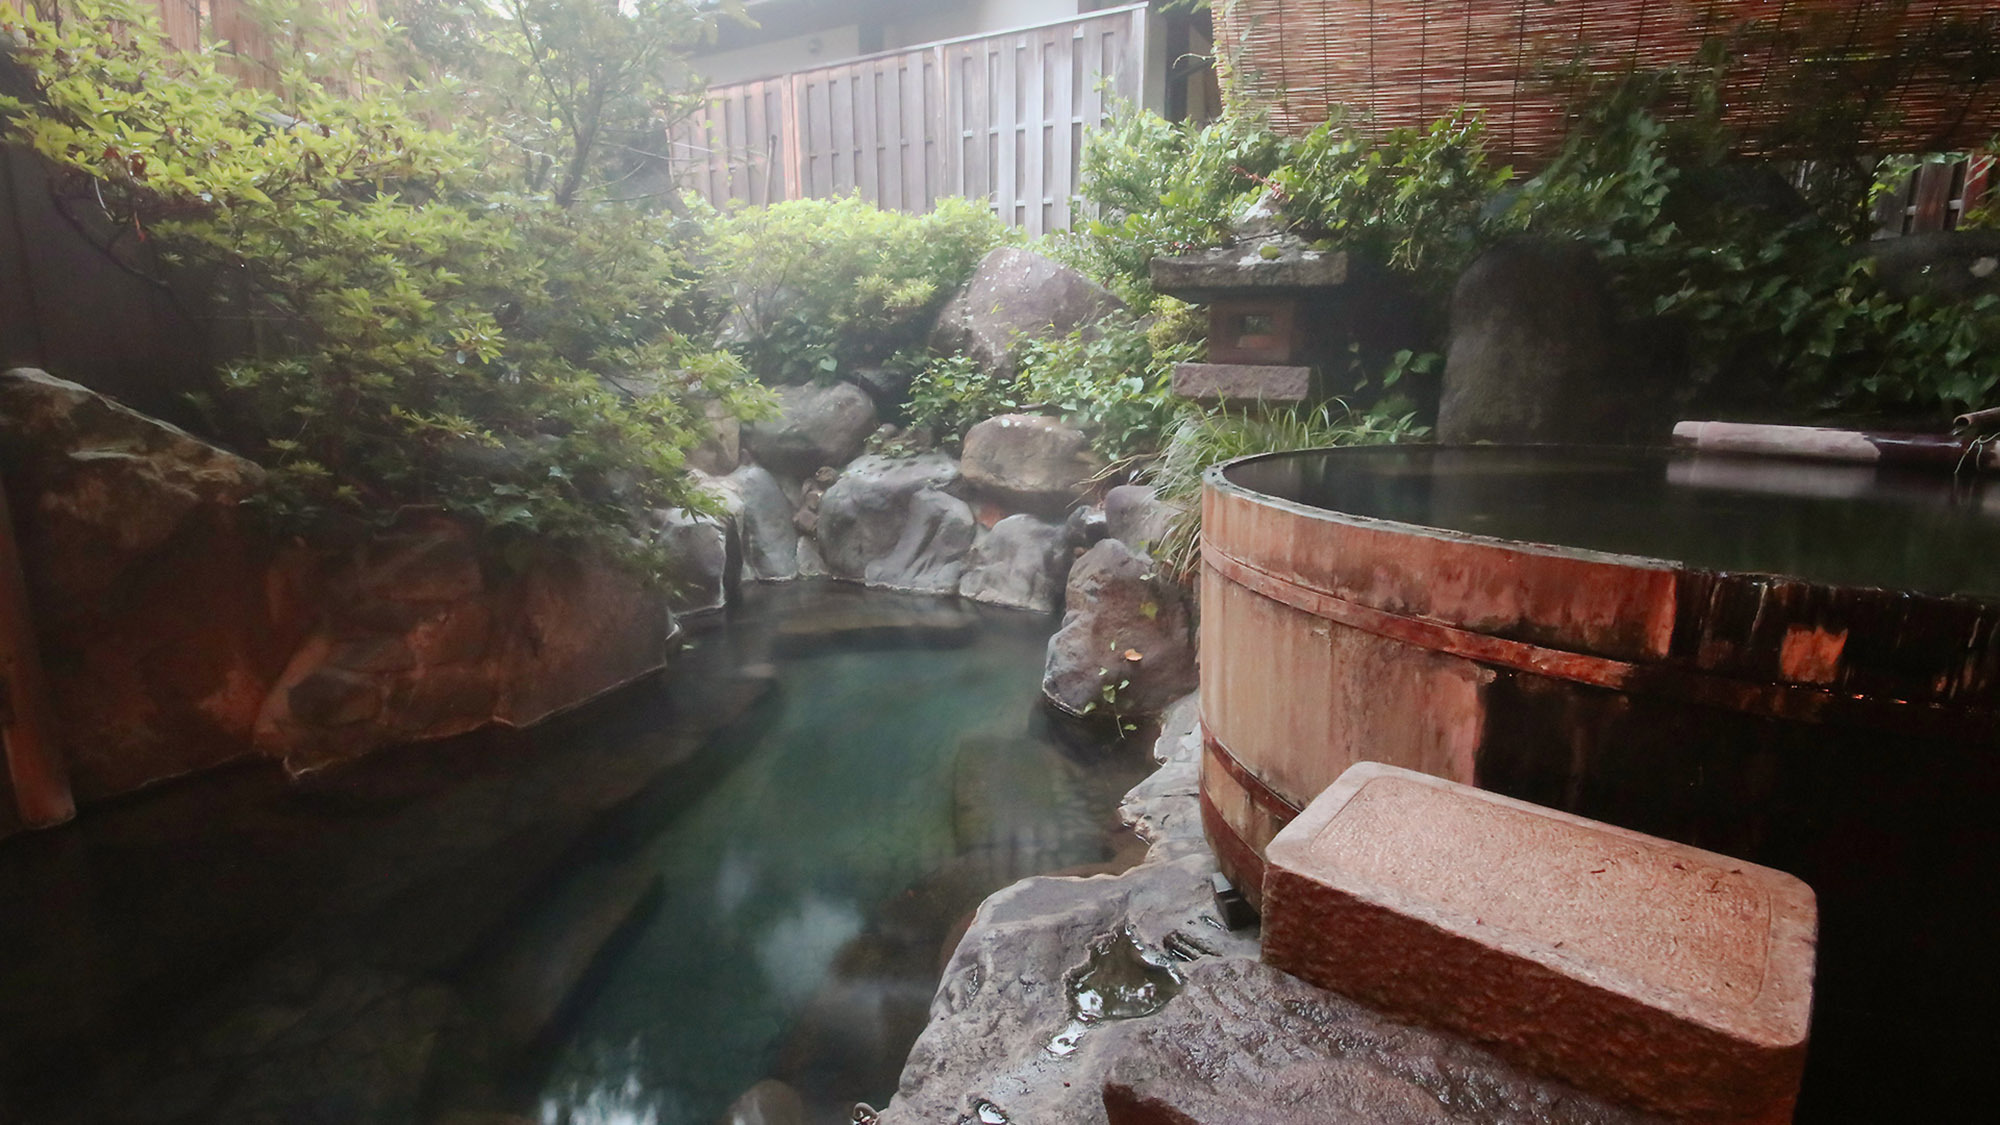 ・【女湯】まるで秘湯を思わせるような露天風呂。緑に囲まれ、どこか心地よい空間です